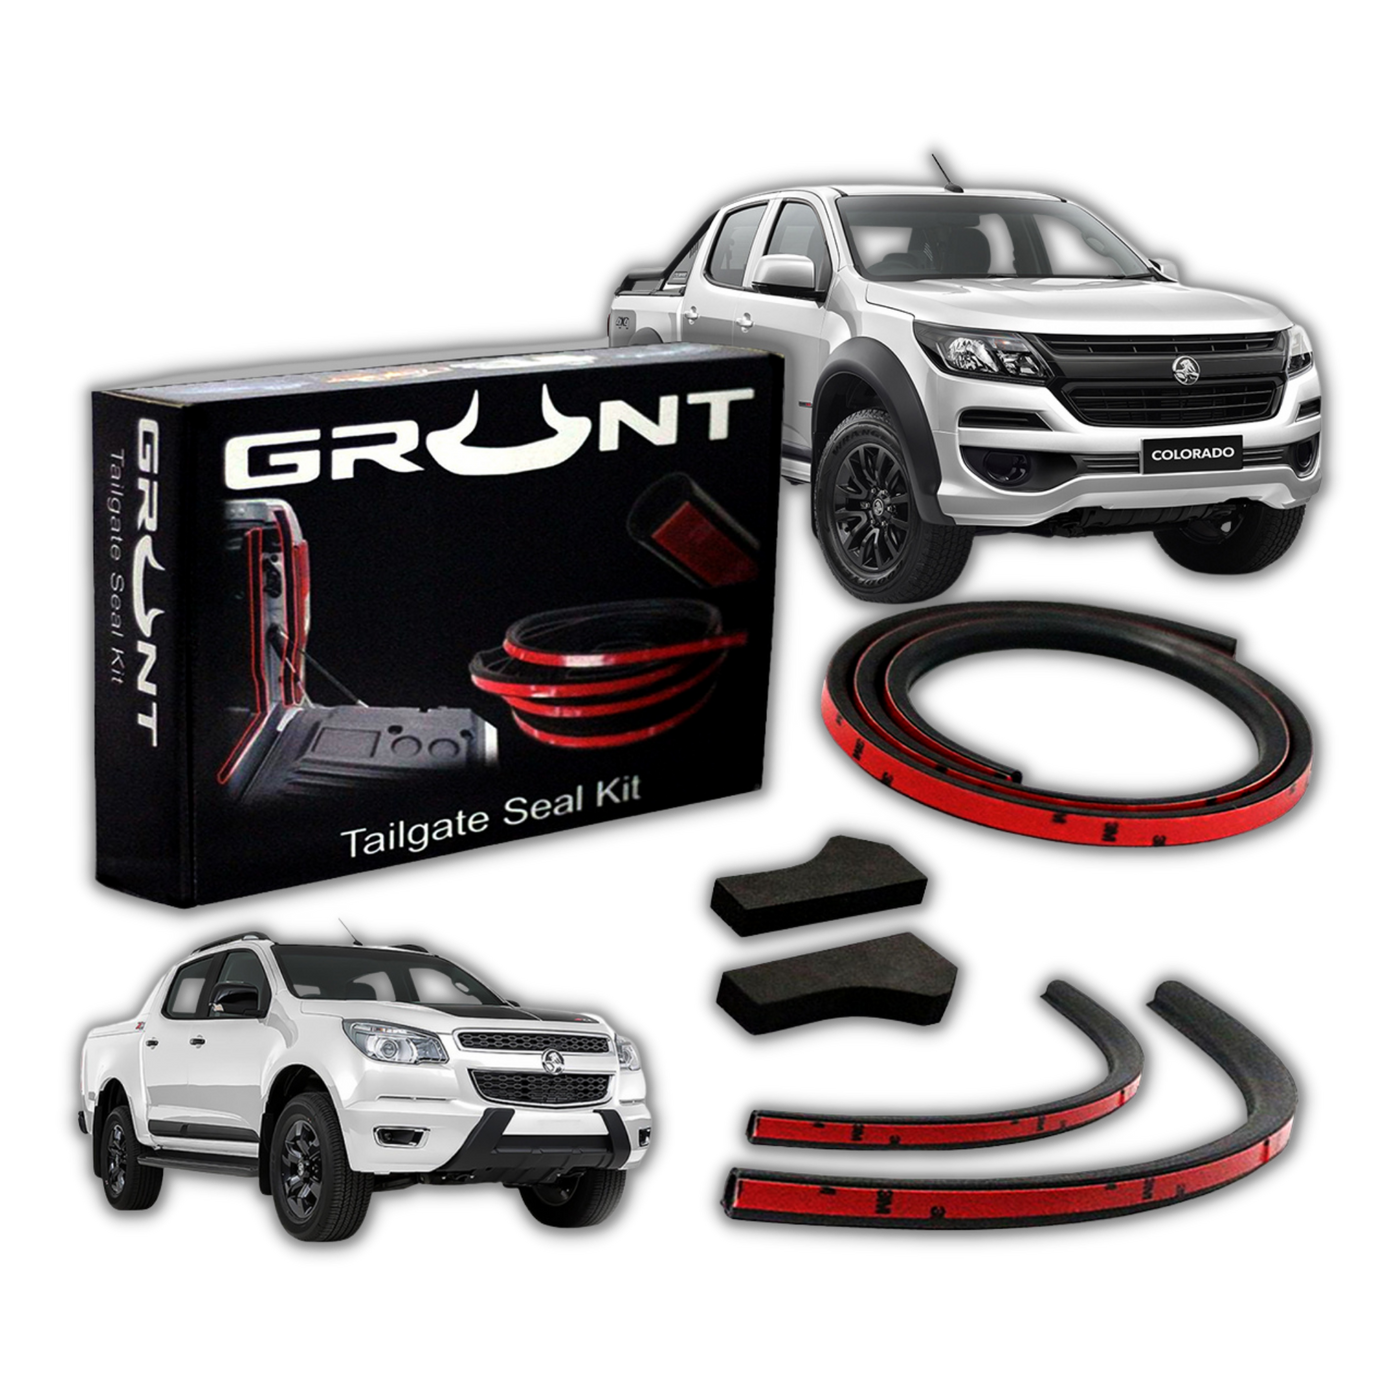 Grunt 4x4 tailgate seal kit for Holden Colorado RG 2012-2019 GTG-HC